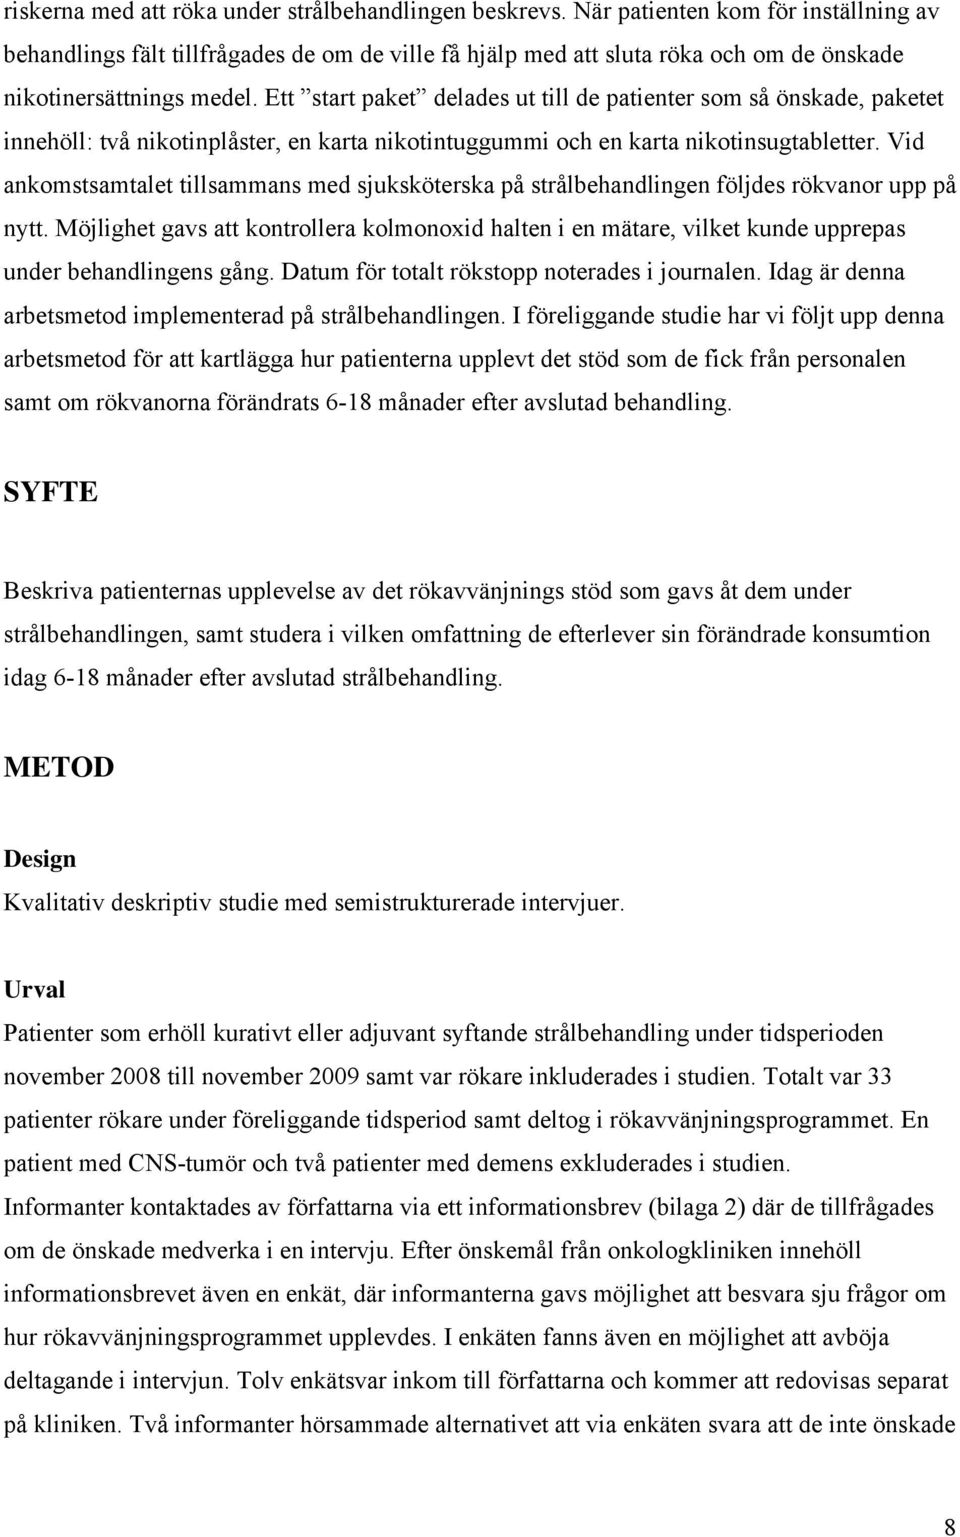 RÖKFRI VID STRÅLBEHANDLING - PDF Free Download